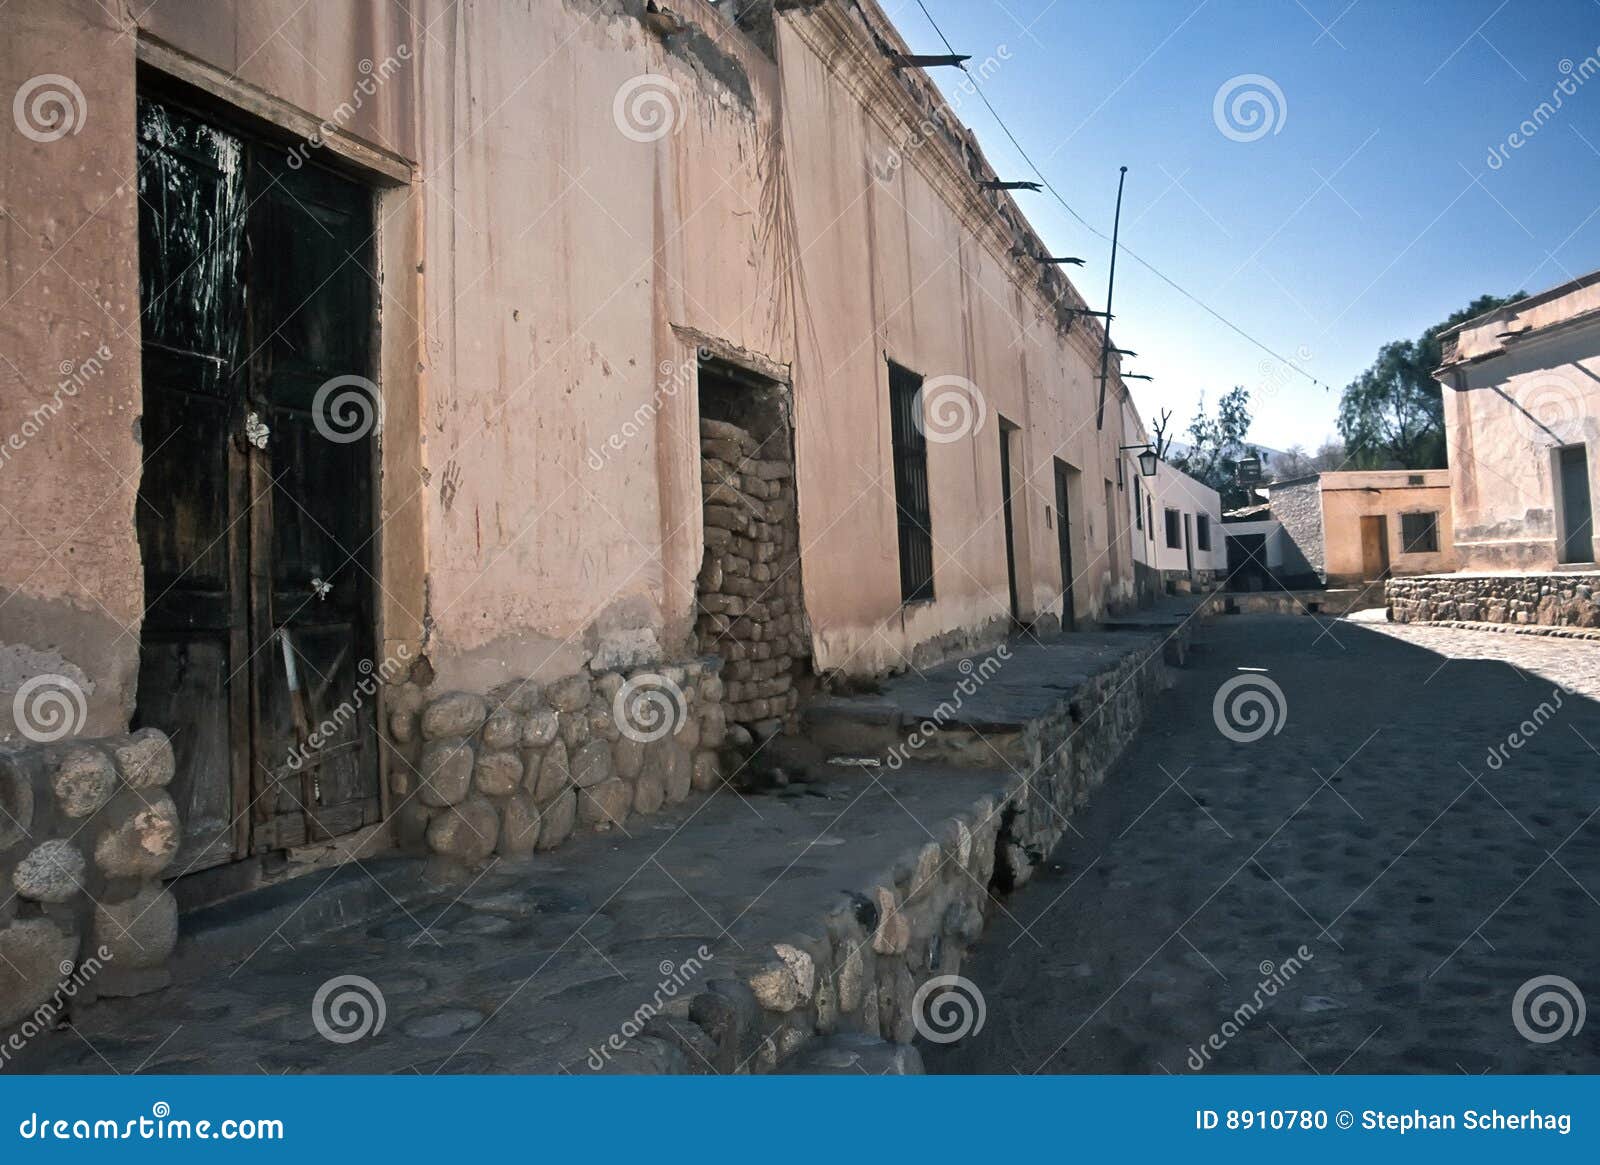 houses in cachi ,salta,argentina